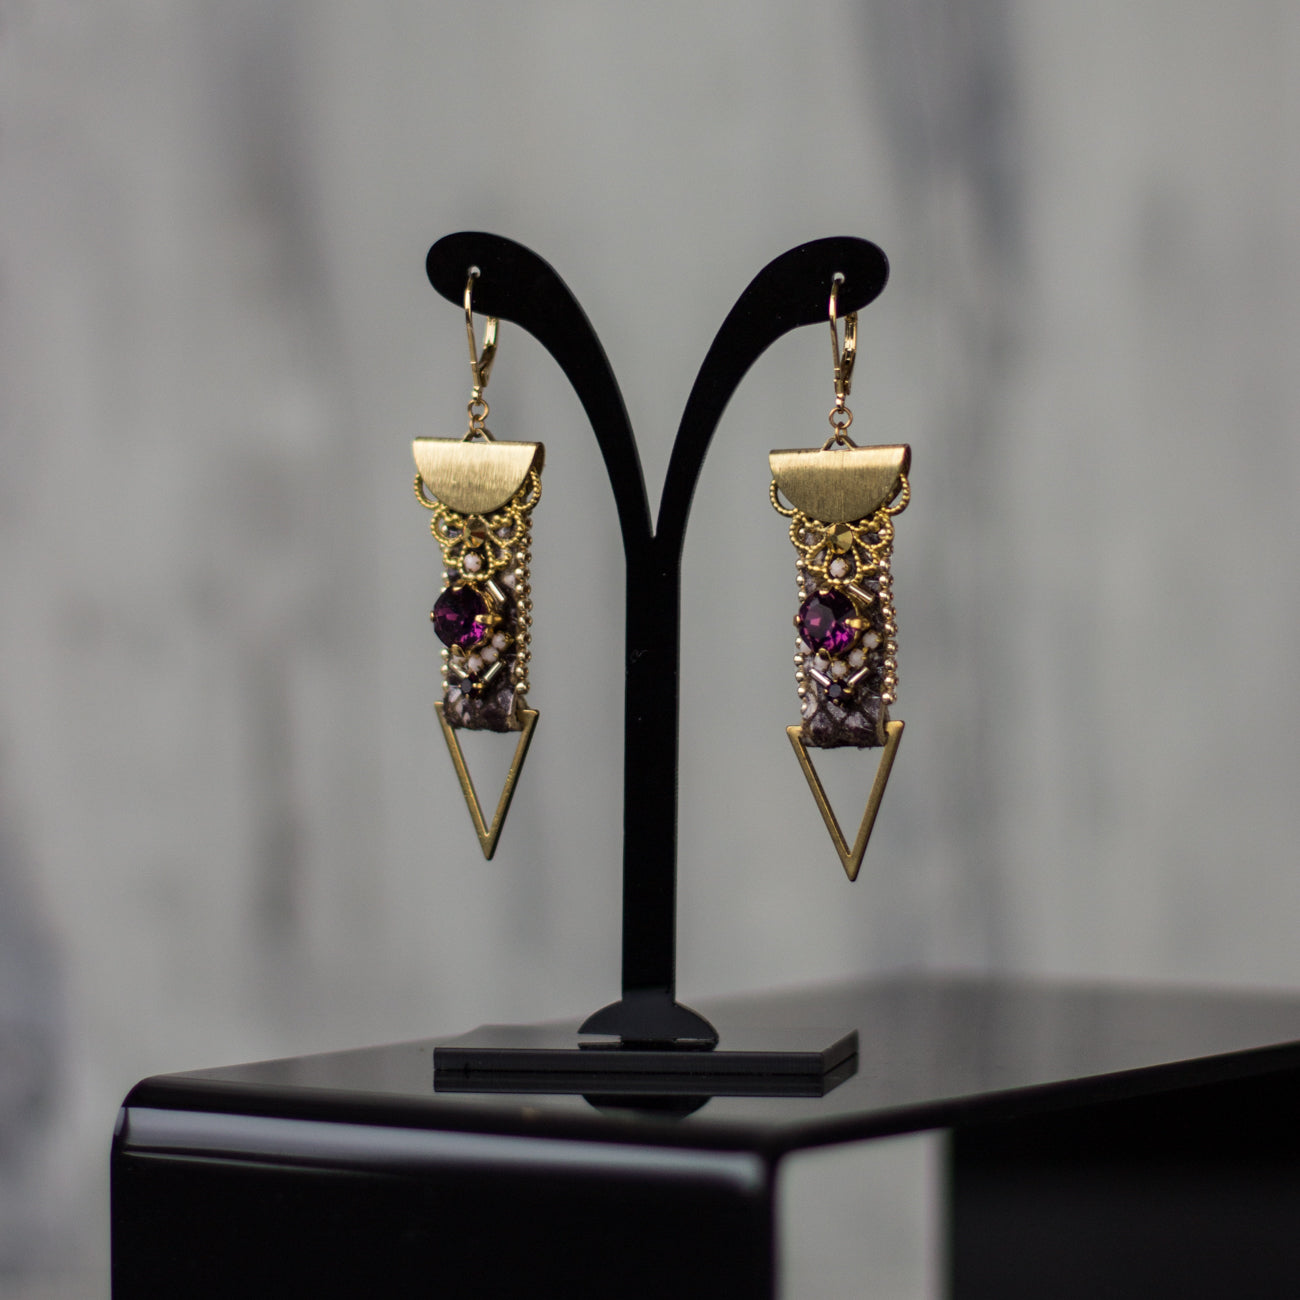 Buy online unique Fancy geometric earrings. Gold Purple earrings. Crystal earrings. Leather earrings. Snake skin earrings. OOAK jewelry. Handmade accessories. Fashion accessories. Gift Idea